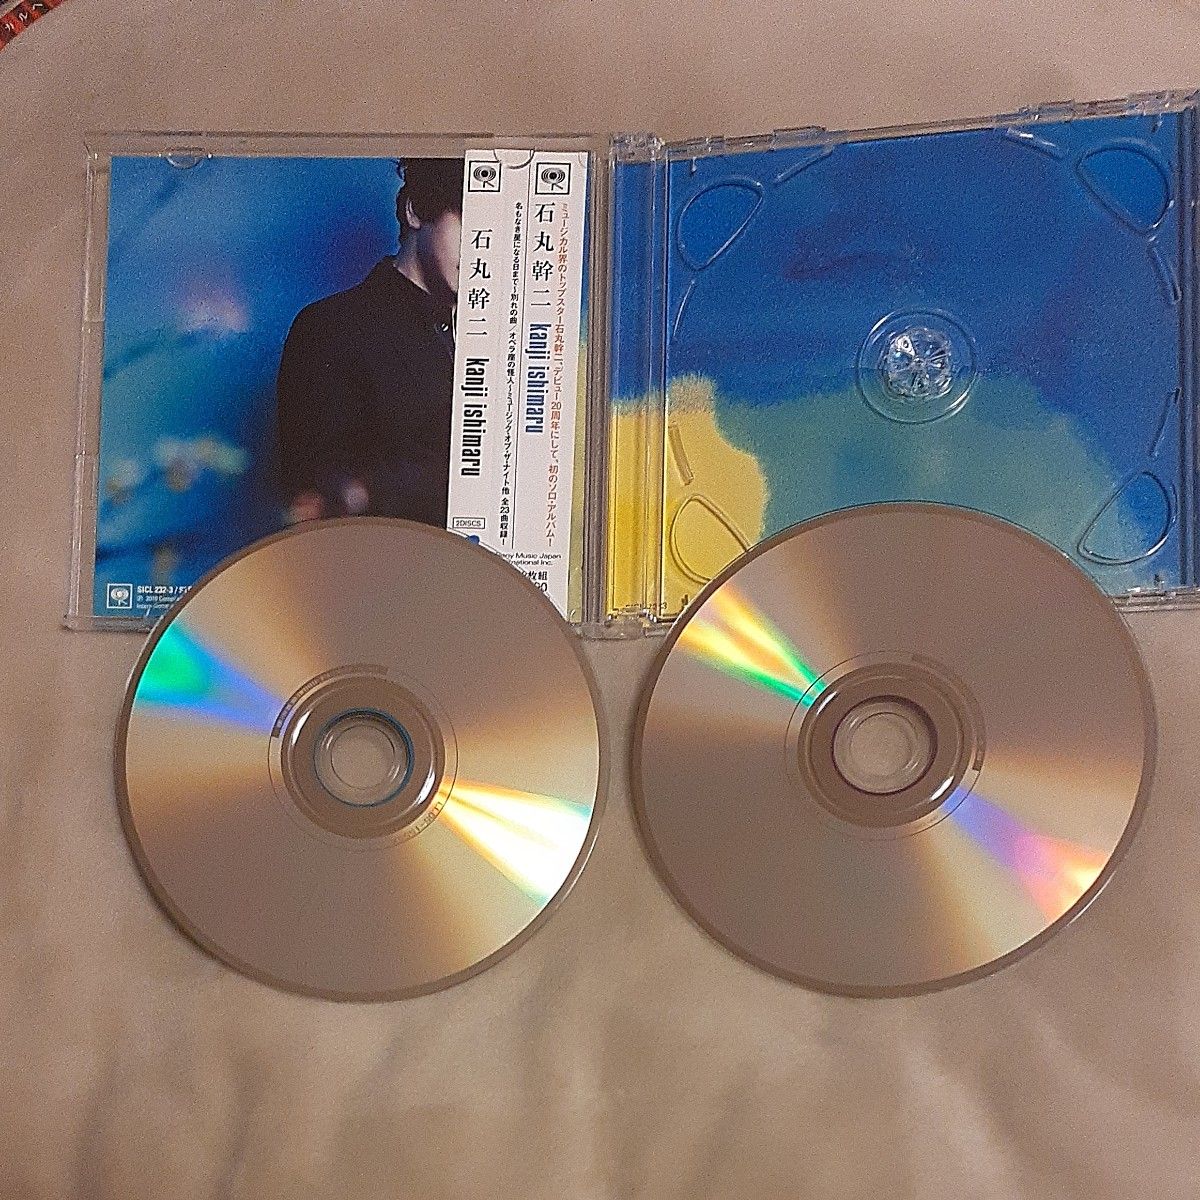 【CD】 石丸幹二 kanji ishimaru 2枚組